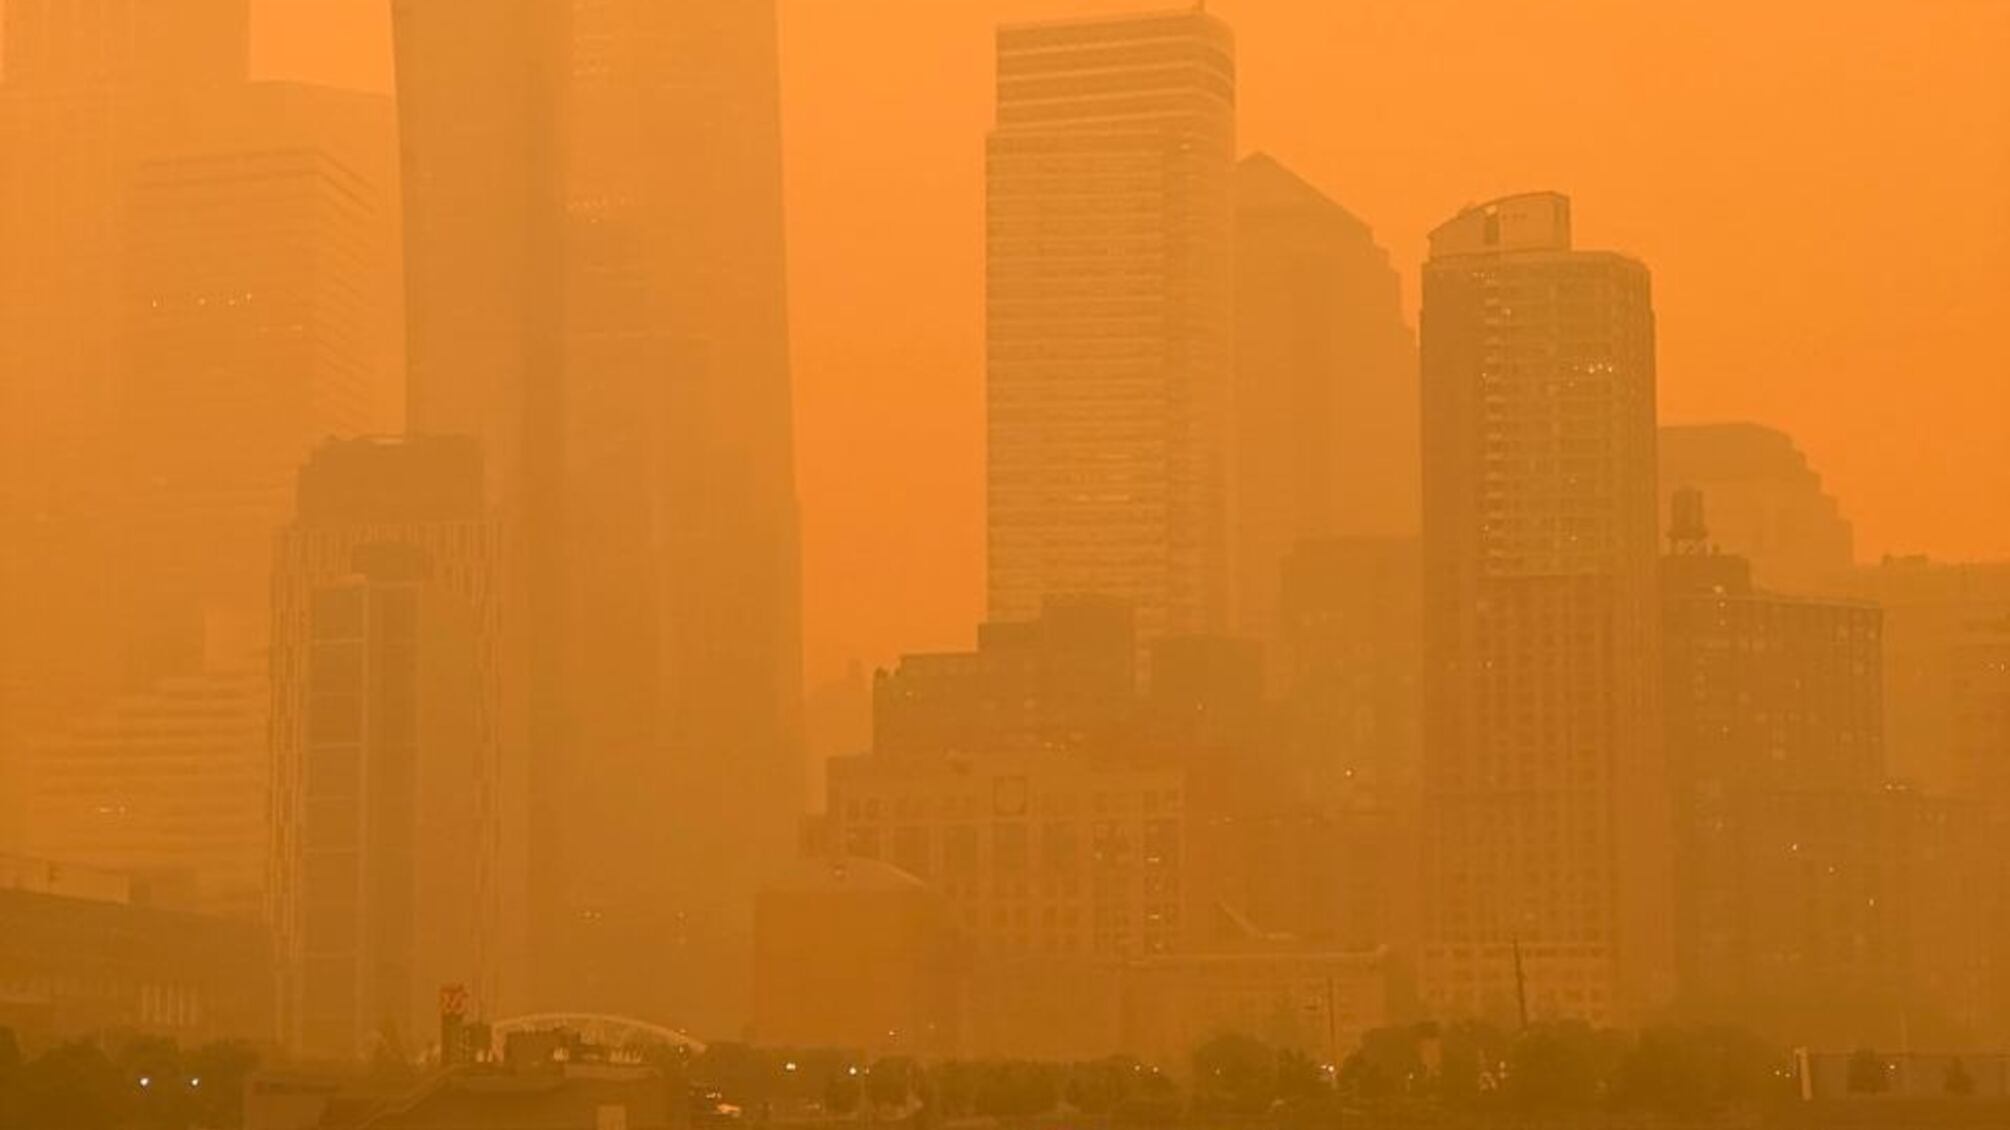 Последствия лесных пожаров в Канаде добрались до Нью-Йорка: город накрыл смог (фото)